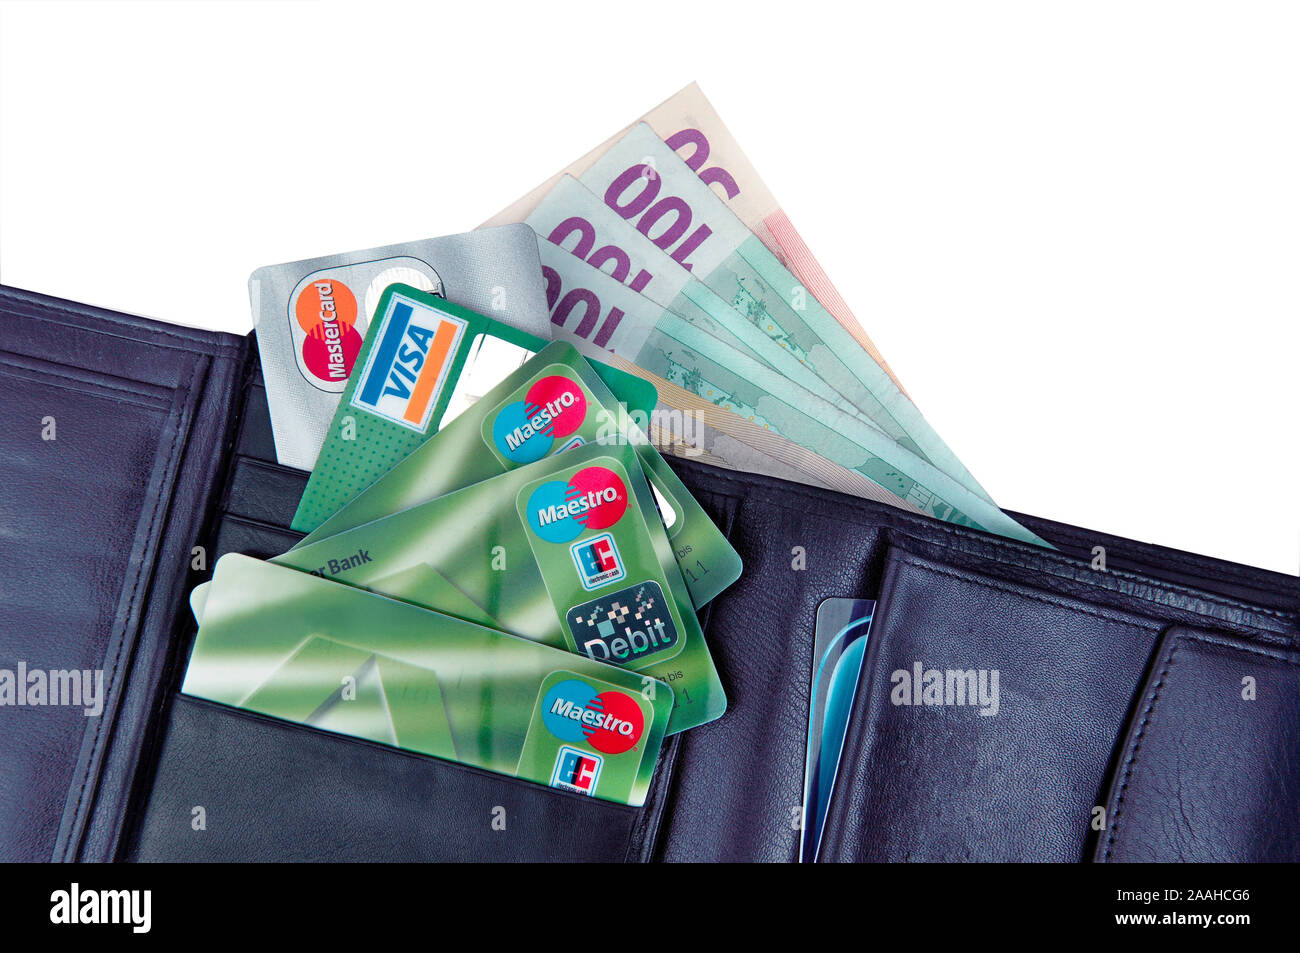 Geldboerse mit Banknoten und Kreditkarten Stock Photo